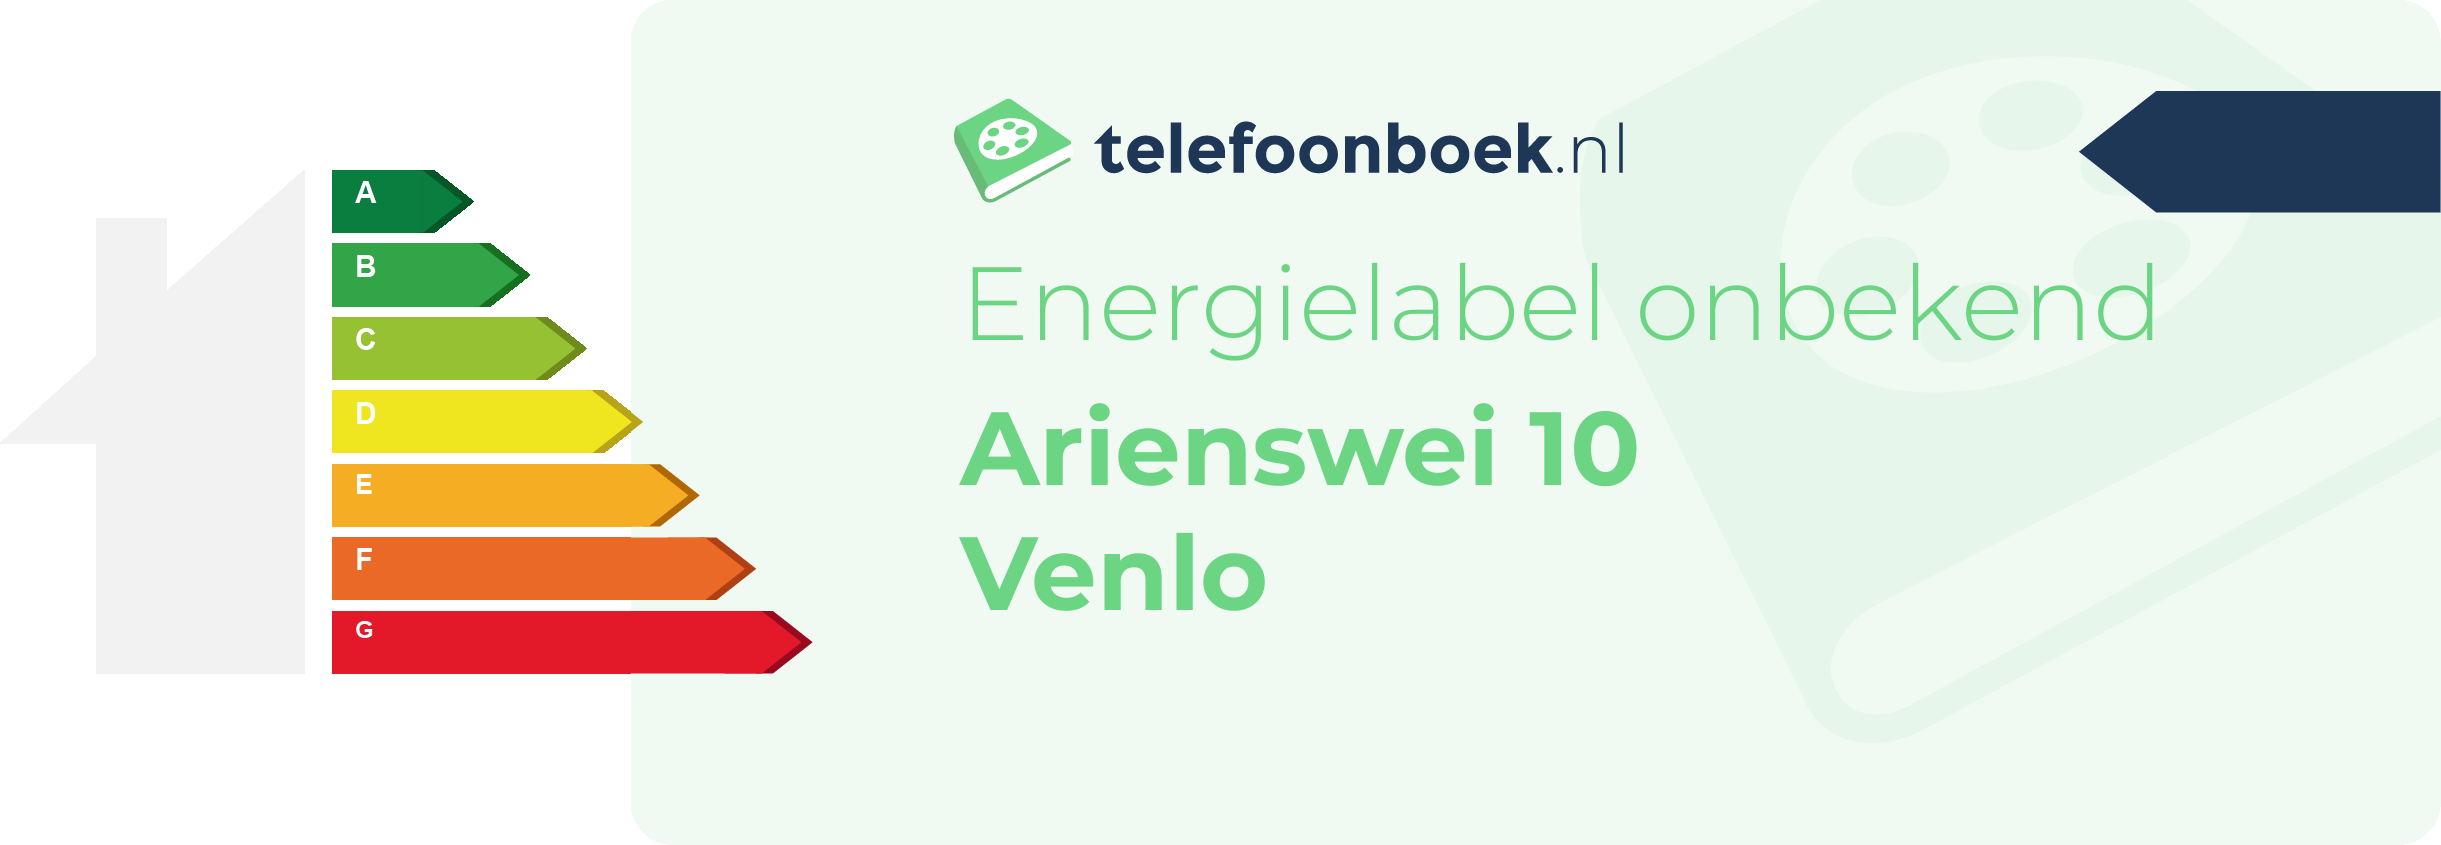 Energielabel Arienswei 10 Venlo